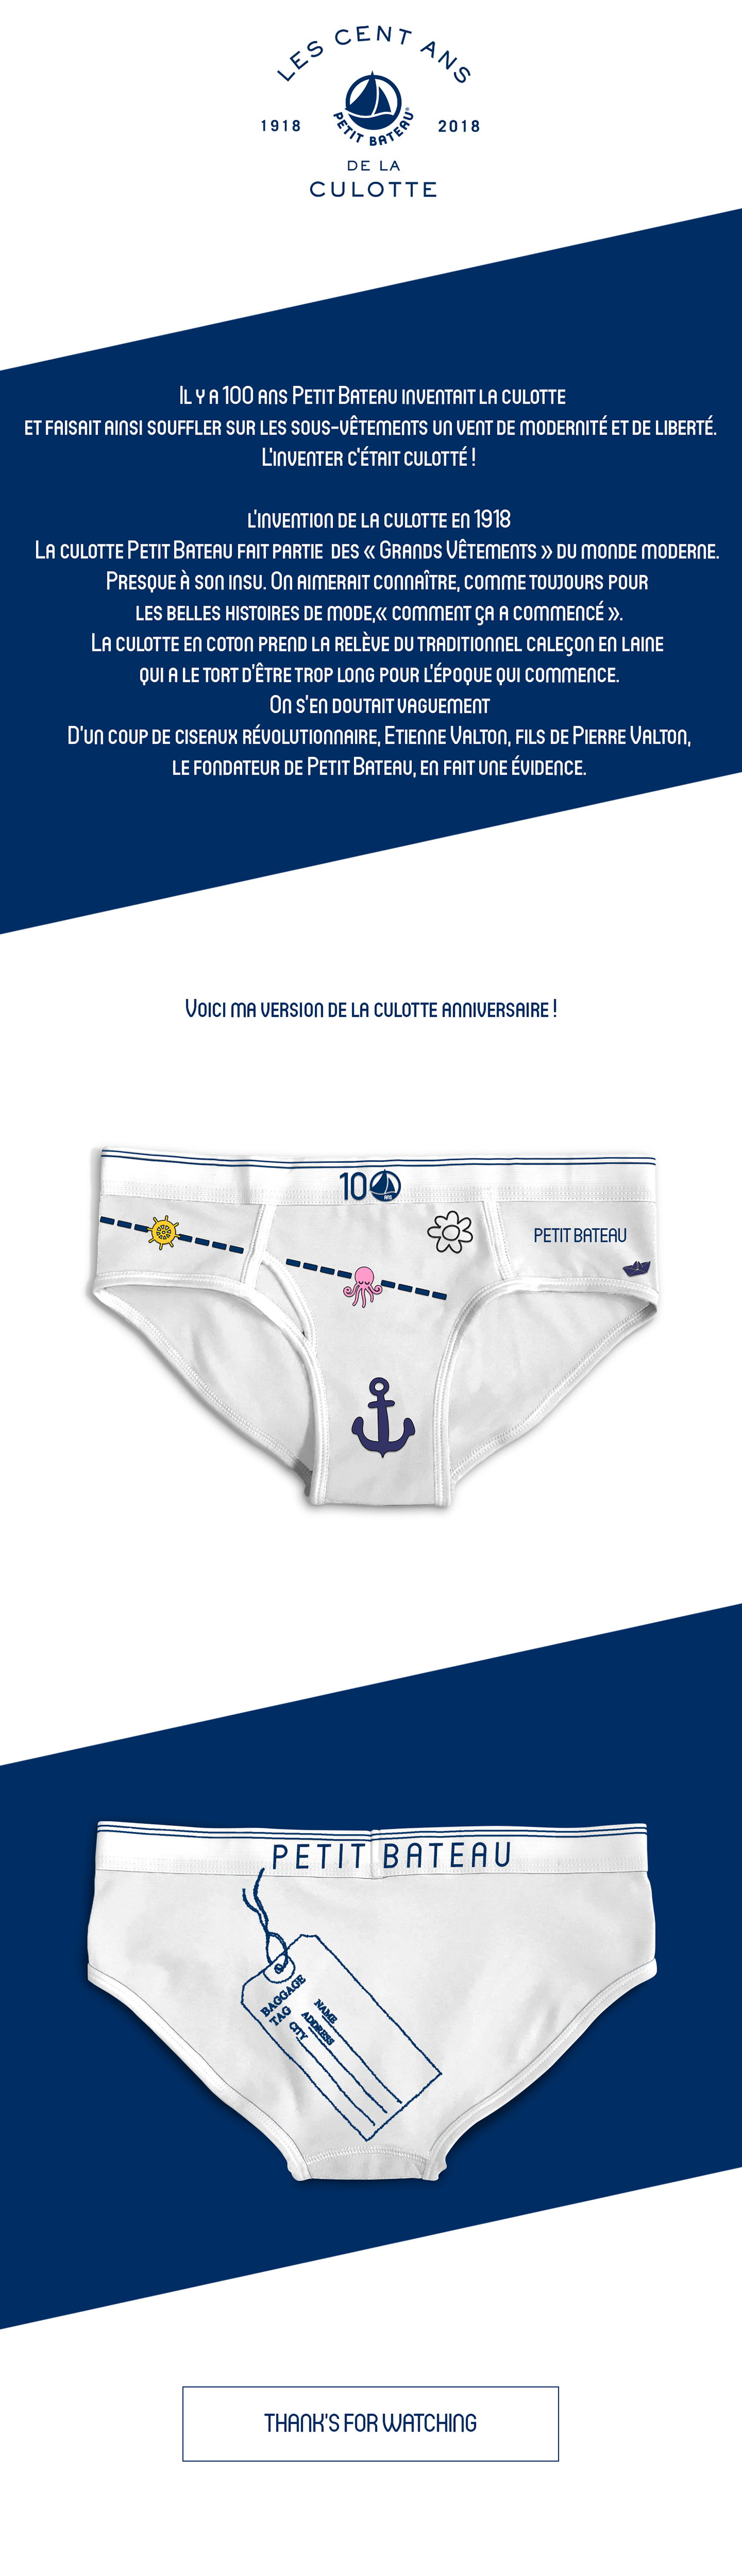 underwear underclothes undergarments underlinen underthings undies petit bateau